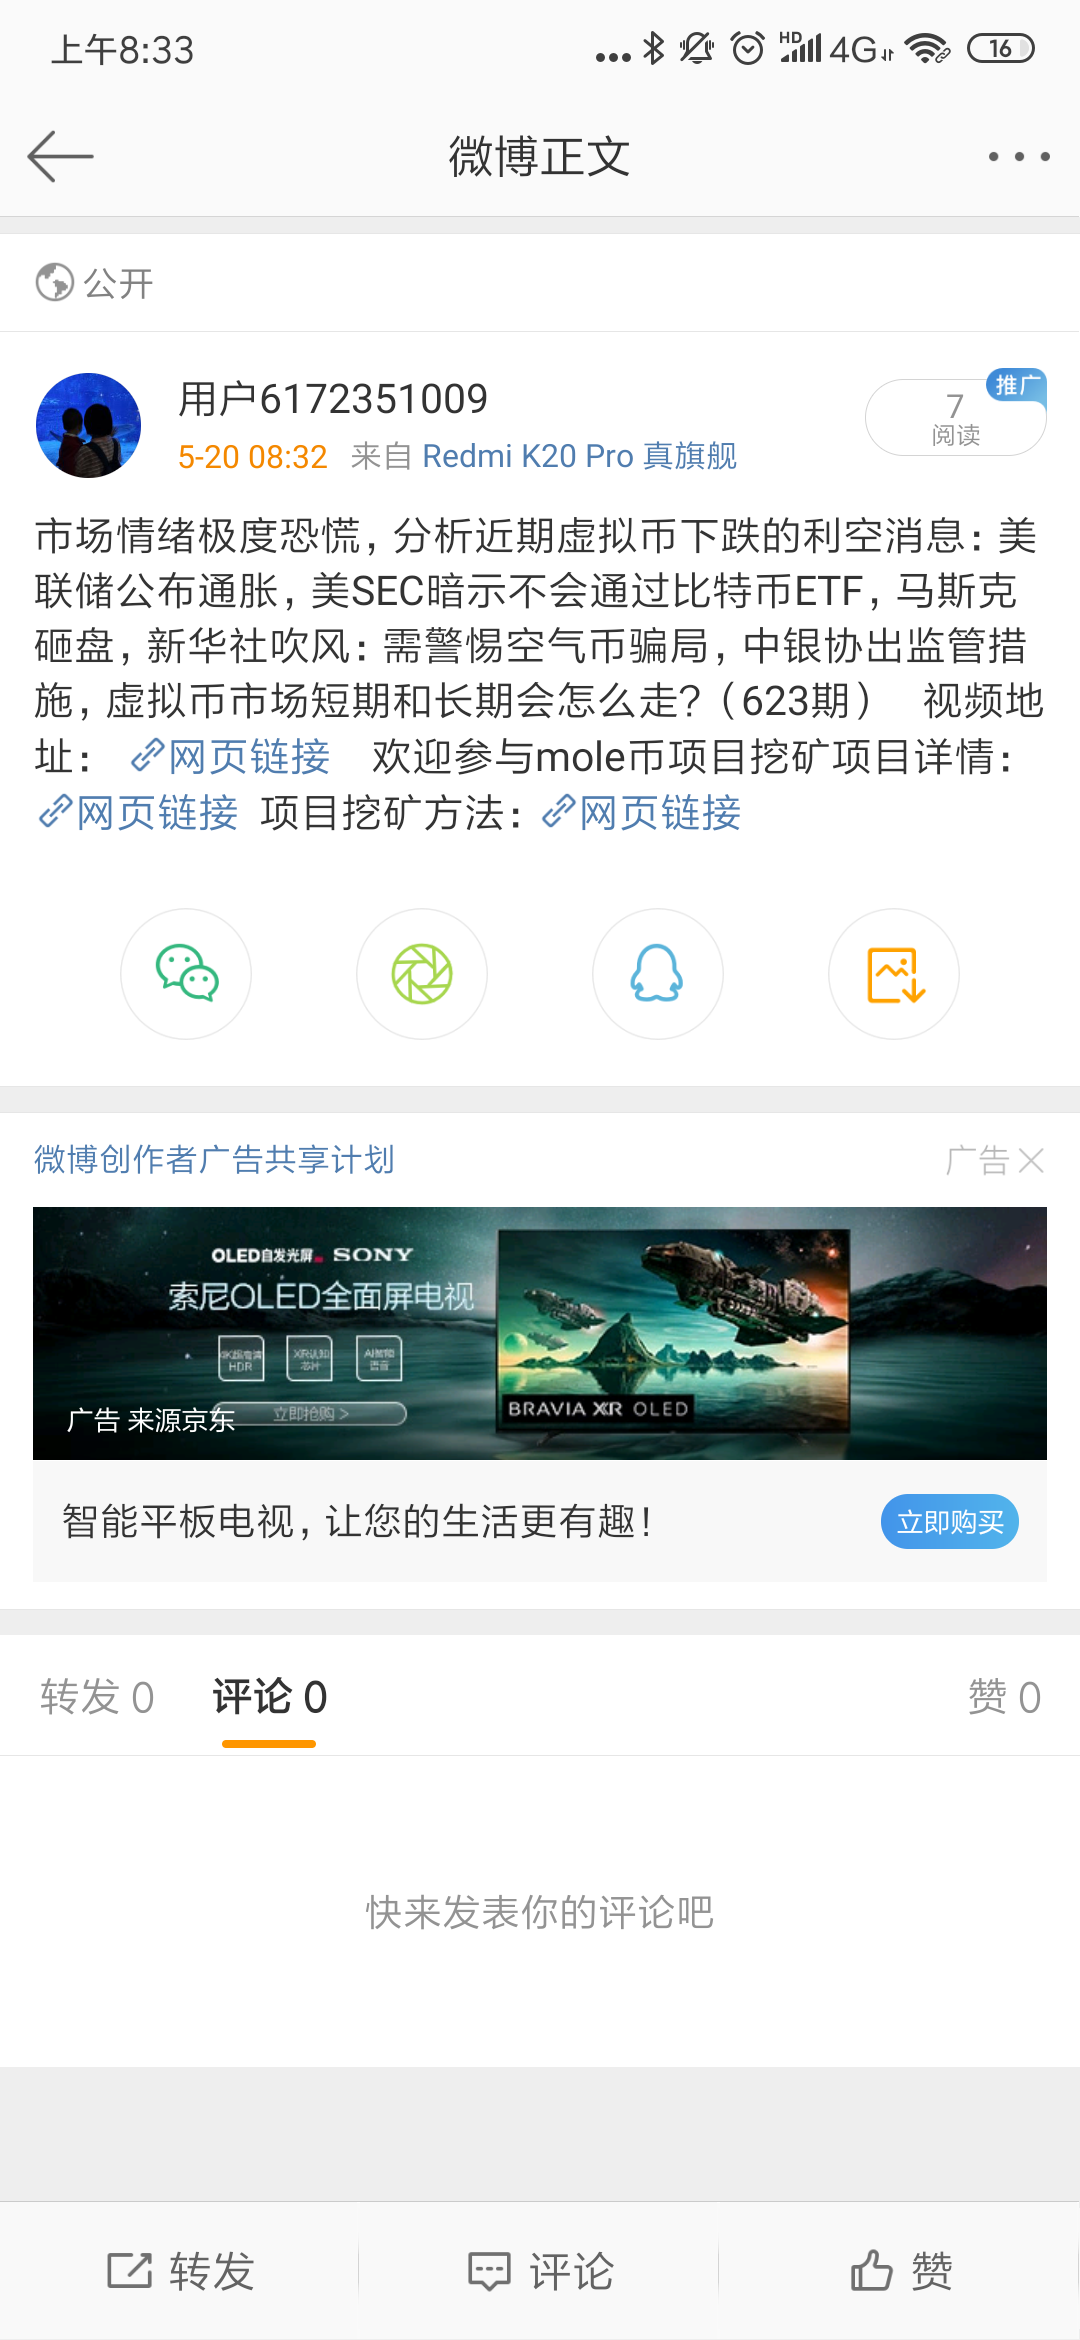 Screenshot_2021-05-20-08-33-01-244_com.sina.weibo.png